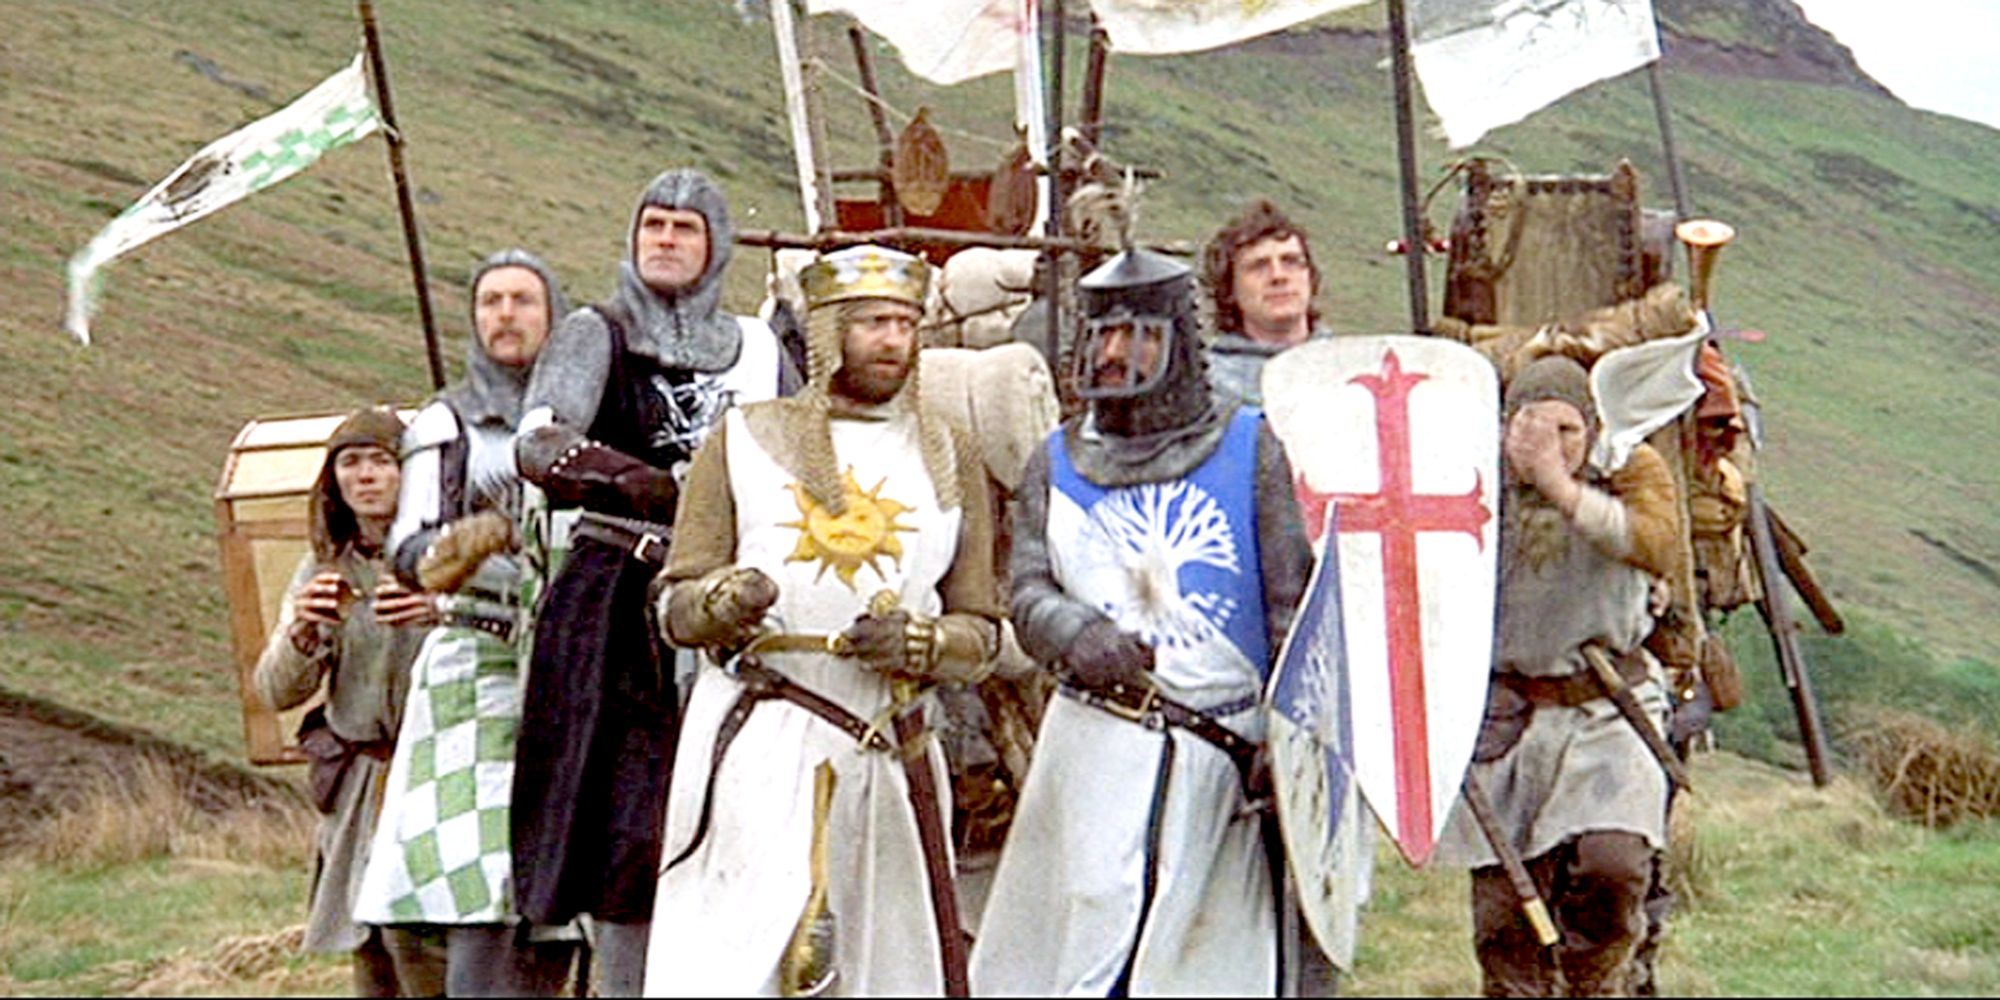 Le roi Arthur et ses compagnons dans leur quête Monty Python